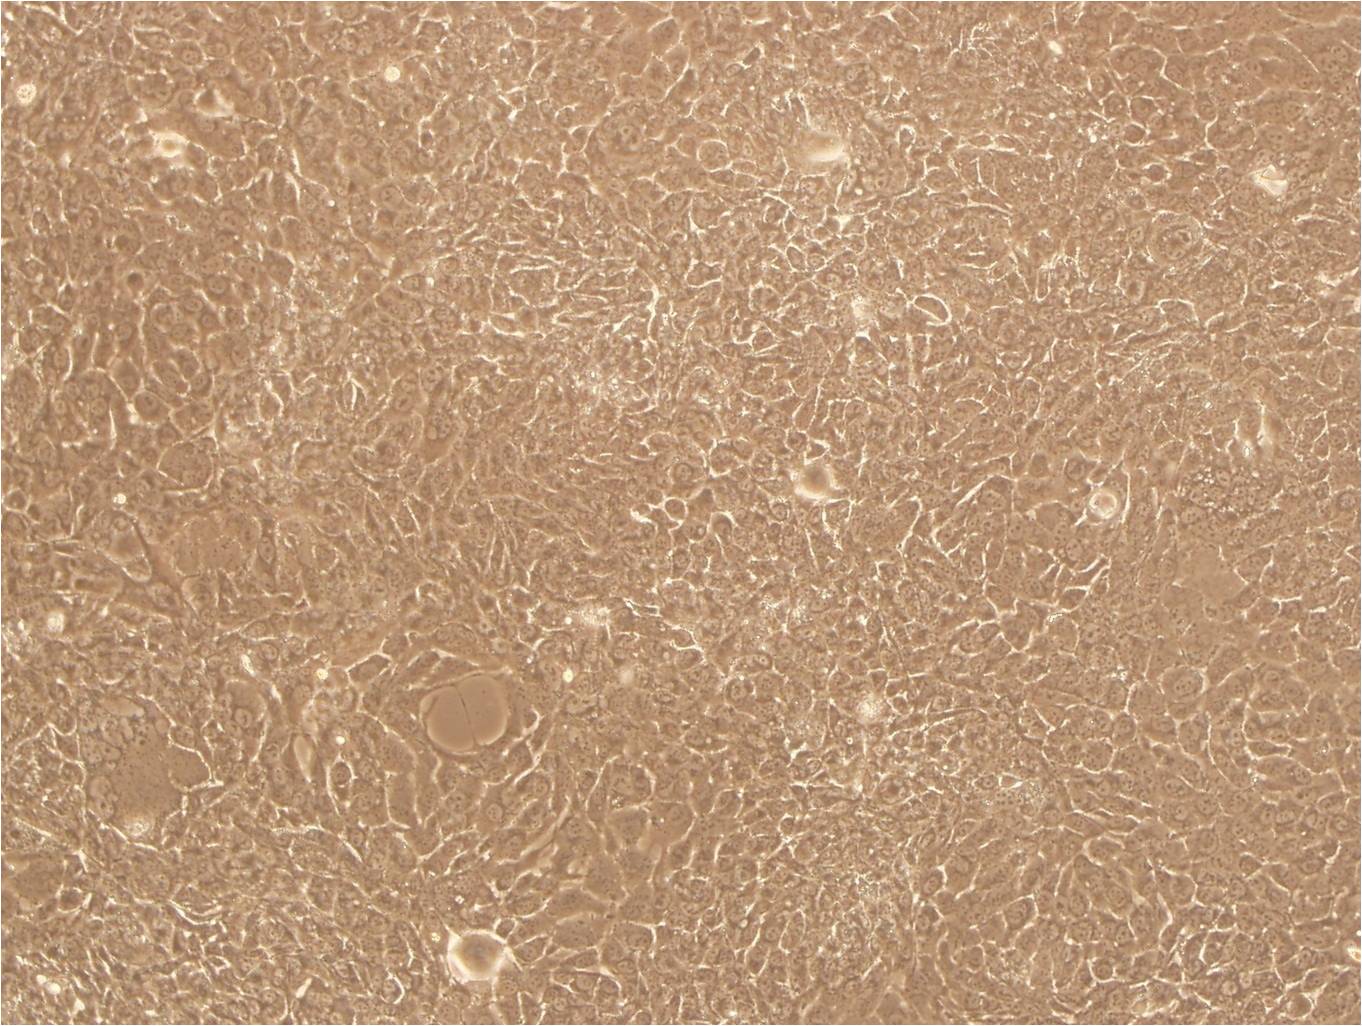 NB4:急性早幼粒复苏细胞(提供STR鉴定图谱),NB4